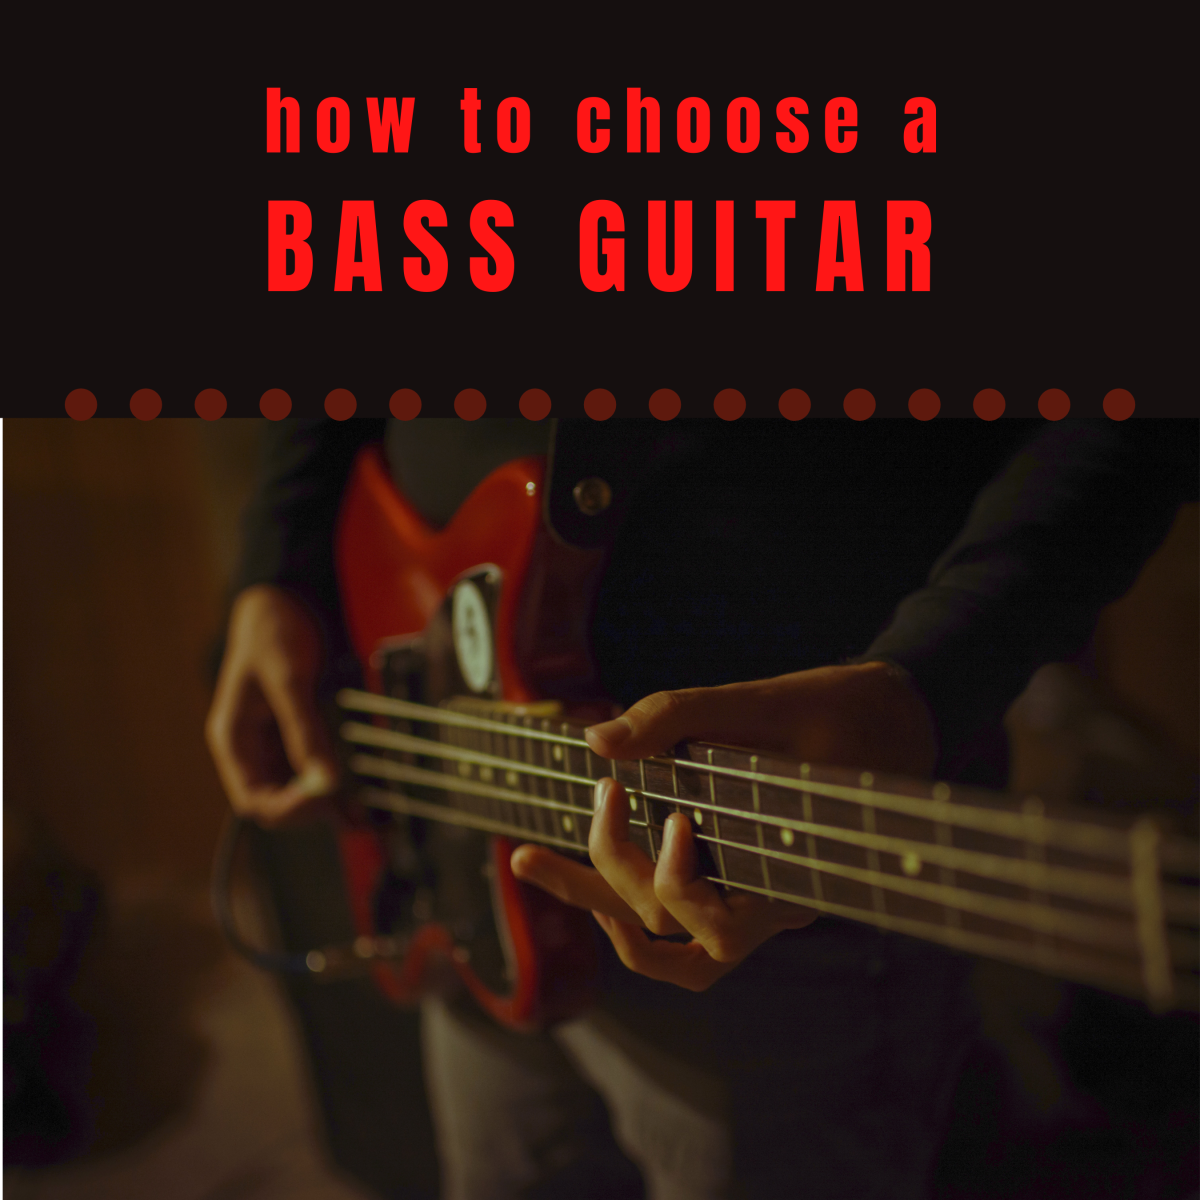 A Guide for Choosing a Bass Guitar for a Beginner